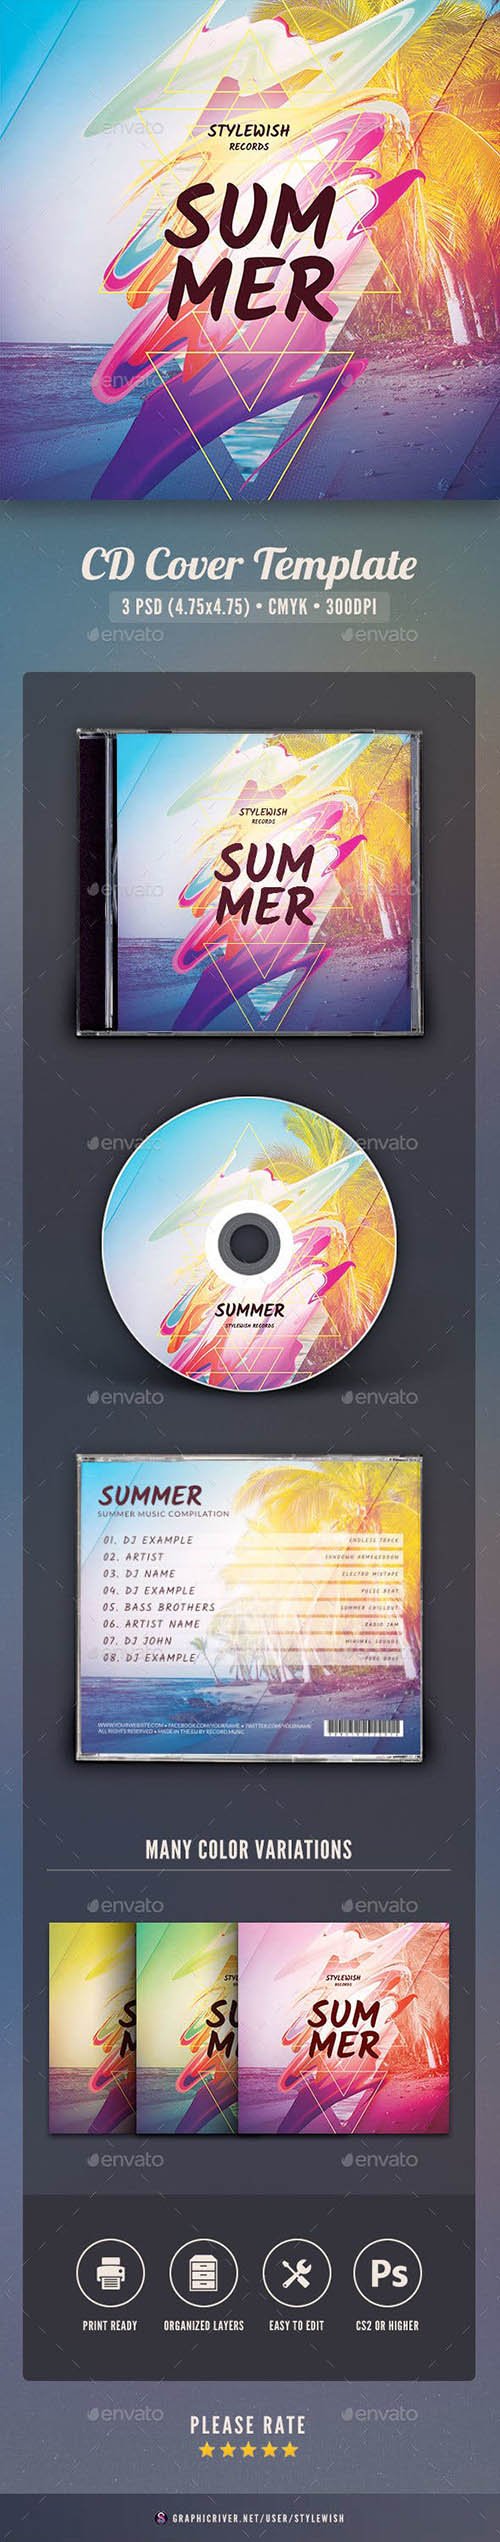 Summer CD Cover Artwork